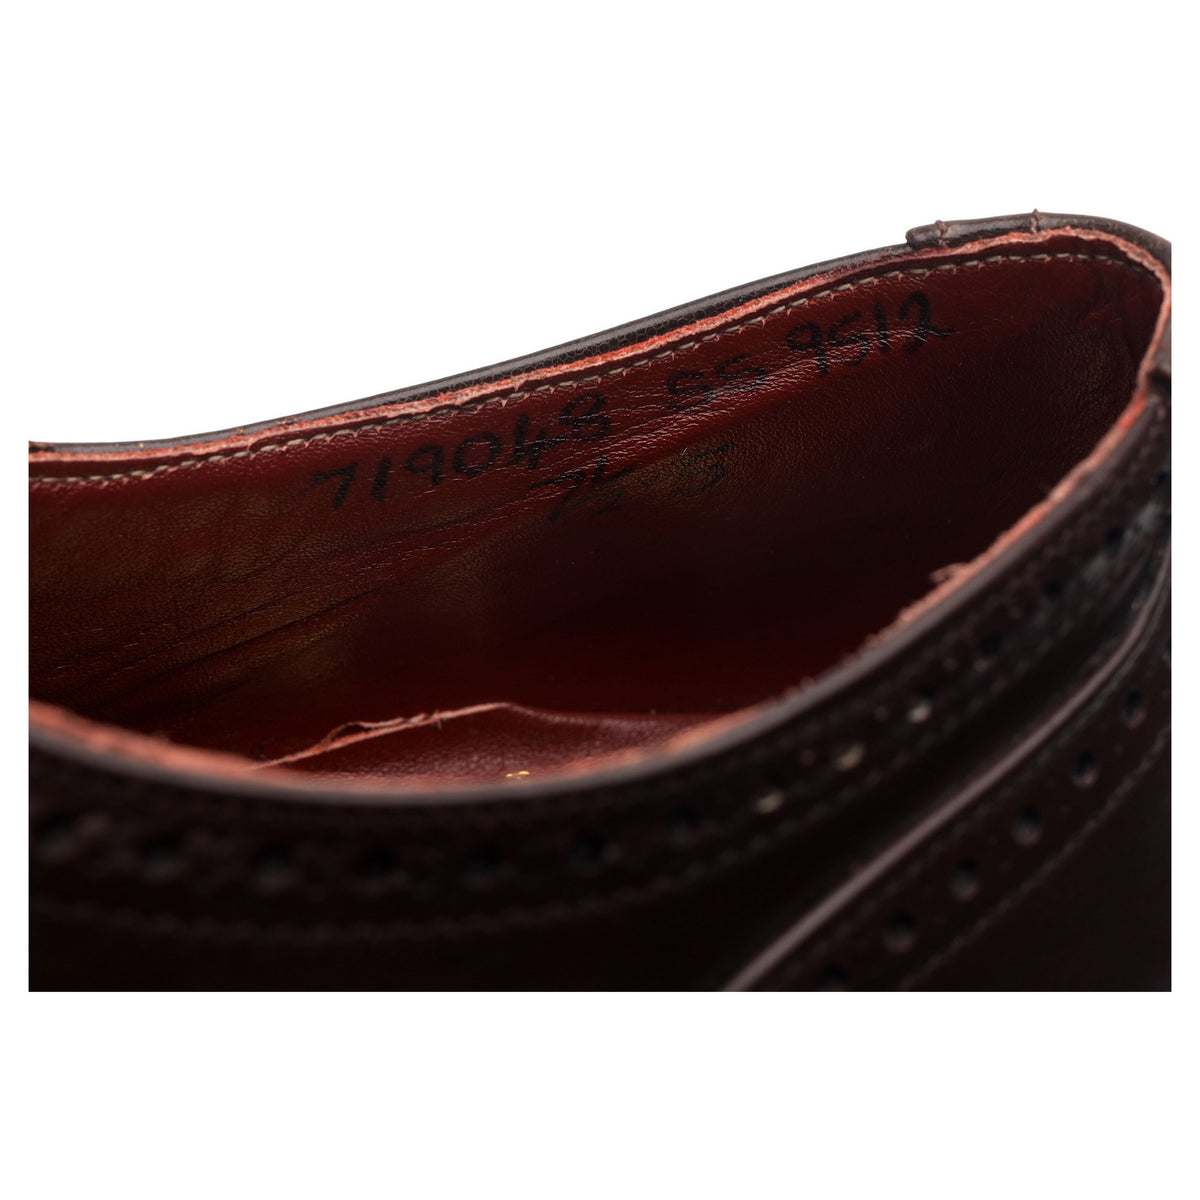 Vintage Dark Brown Leather Oxford Semi Brogues UK 7.5